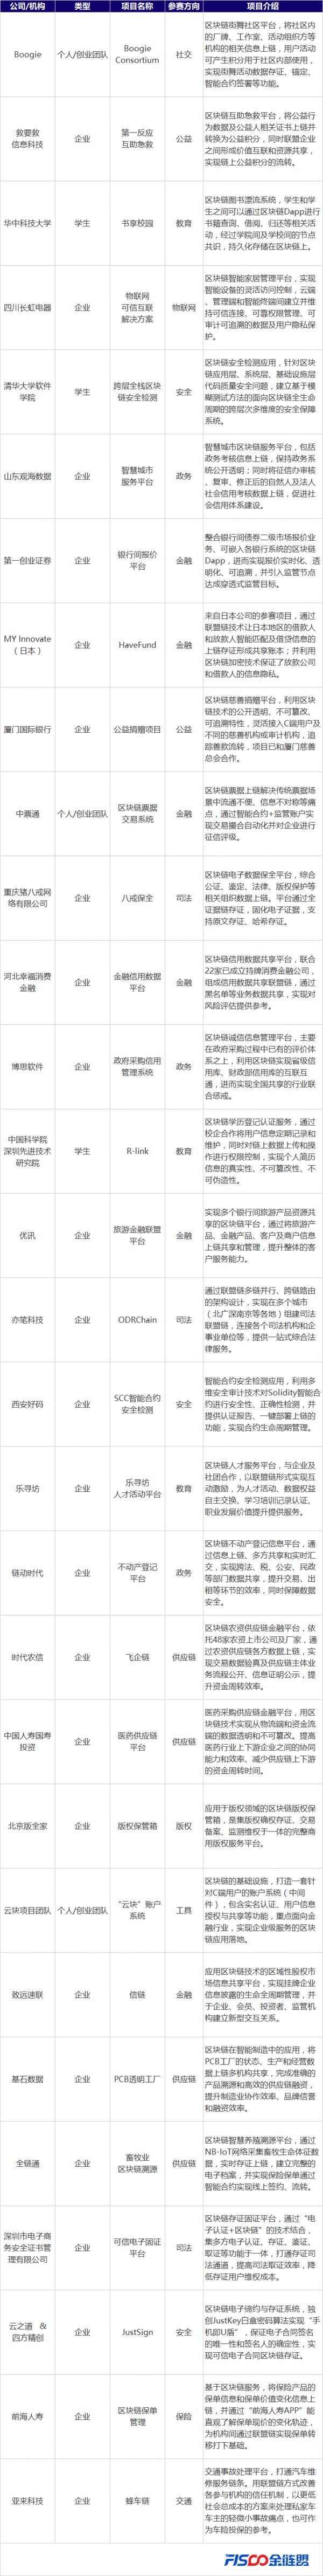 金链盟中国区块链应用大赛30强名单